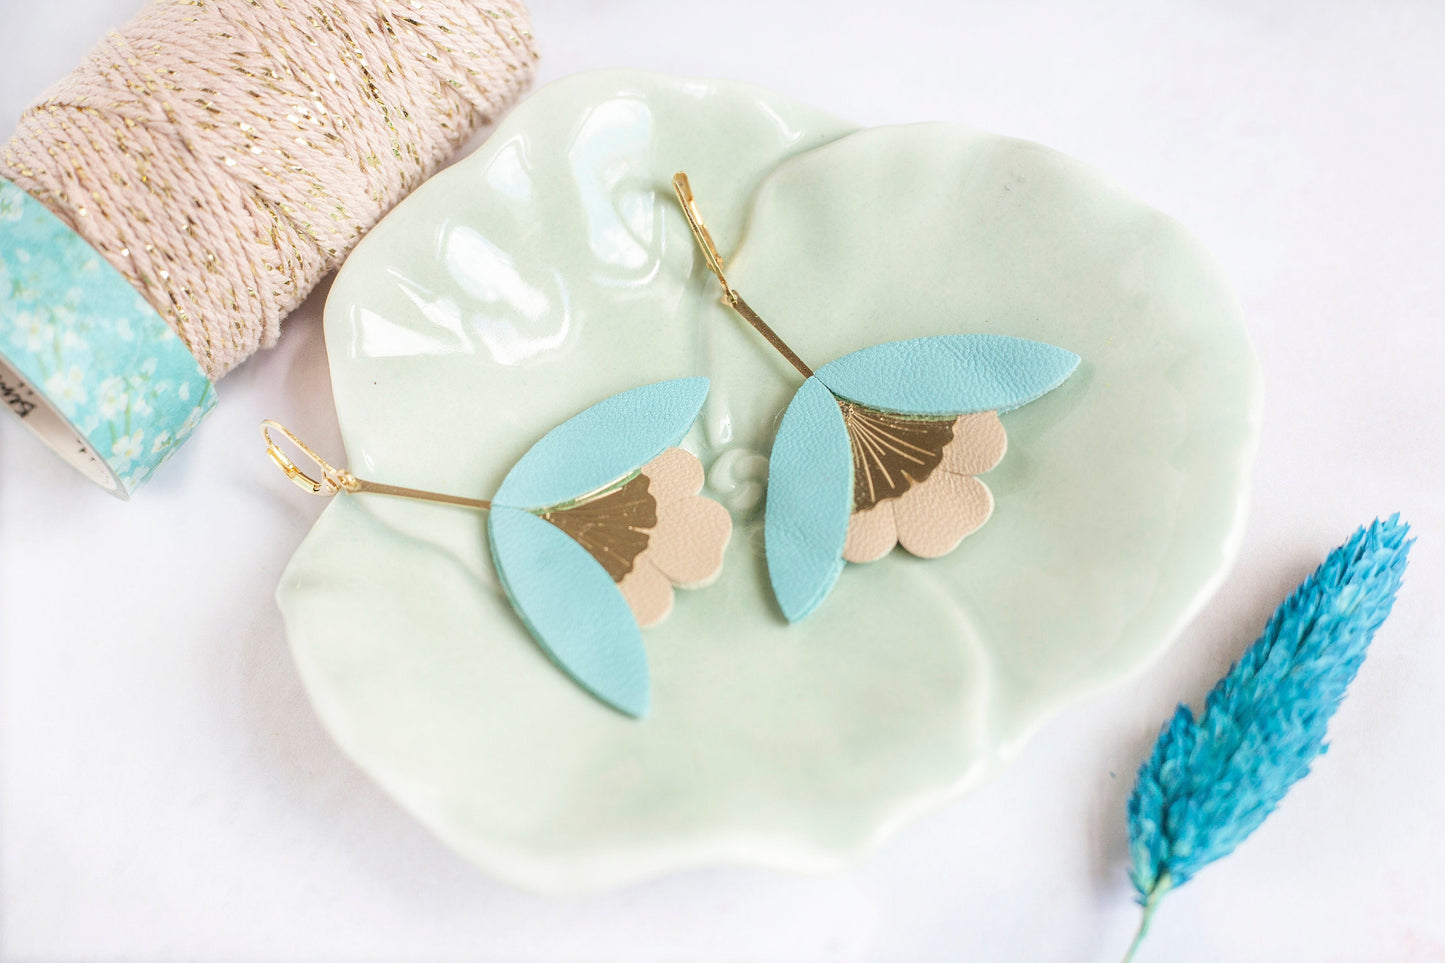 Ginkgo Flower earrings in blue and beige leather